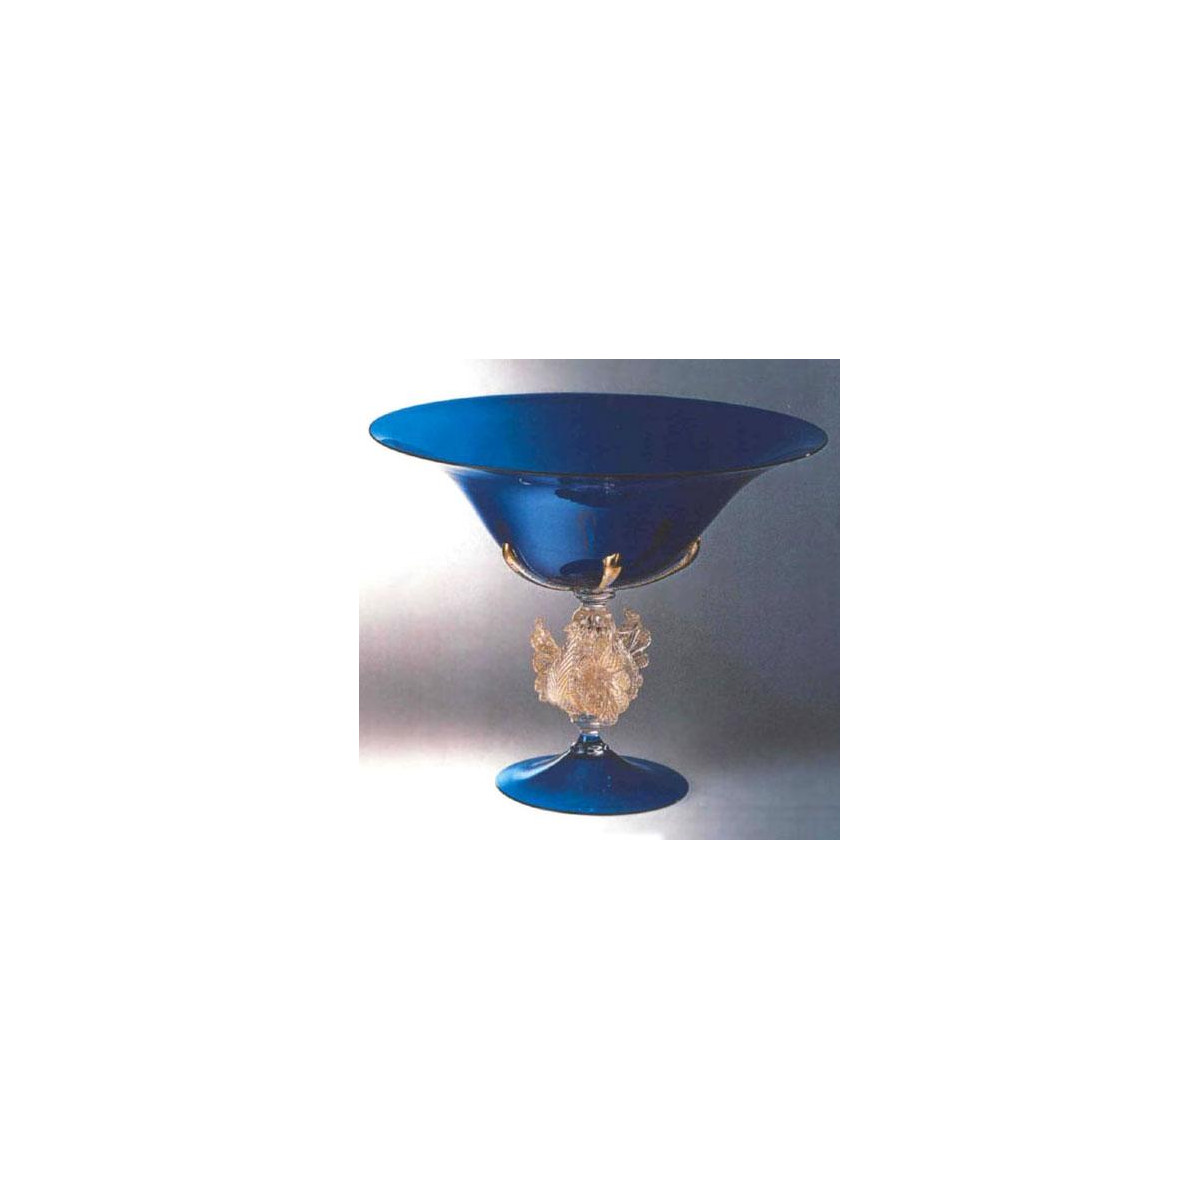 "Corneo" Murano glass fruitstand - blue